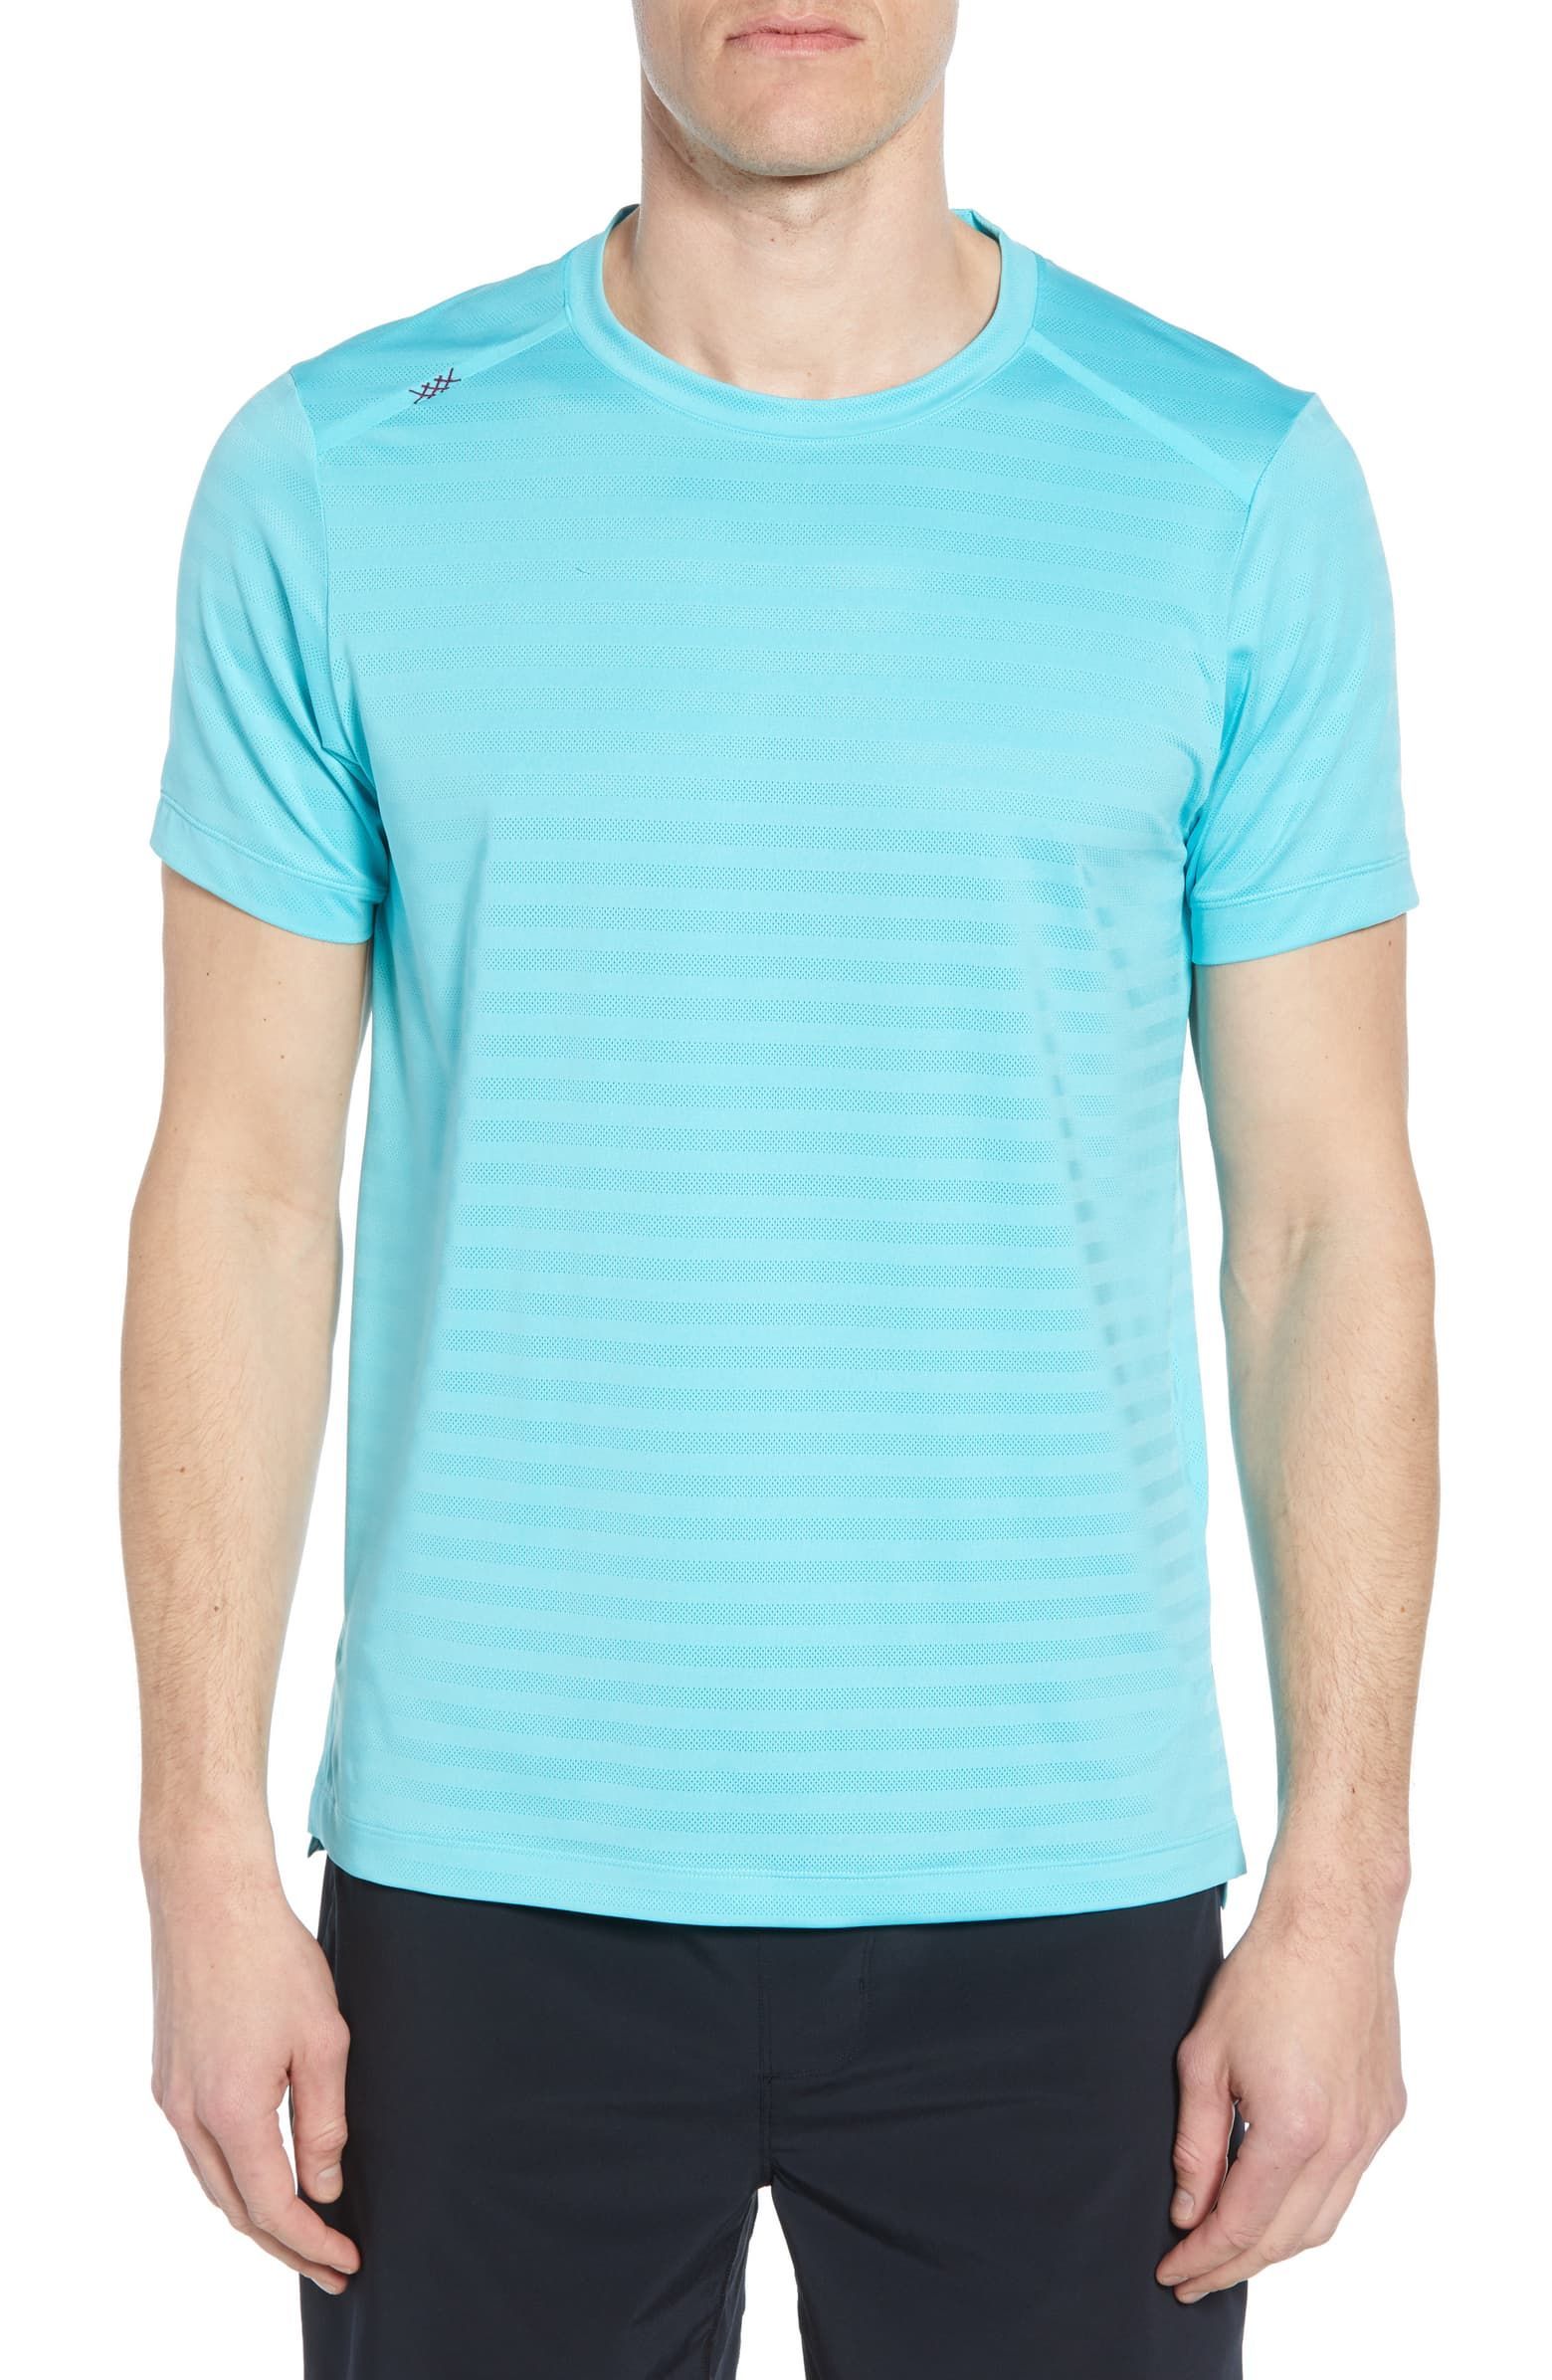 Rhone Swift Short-Sleeve Running Shirt